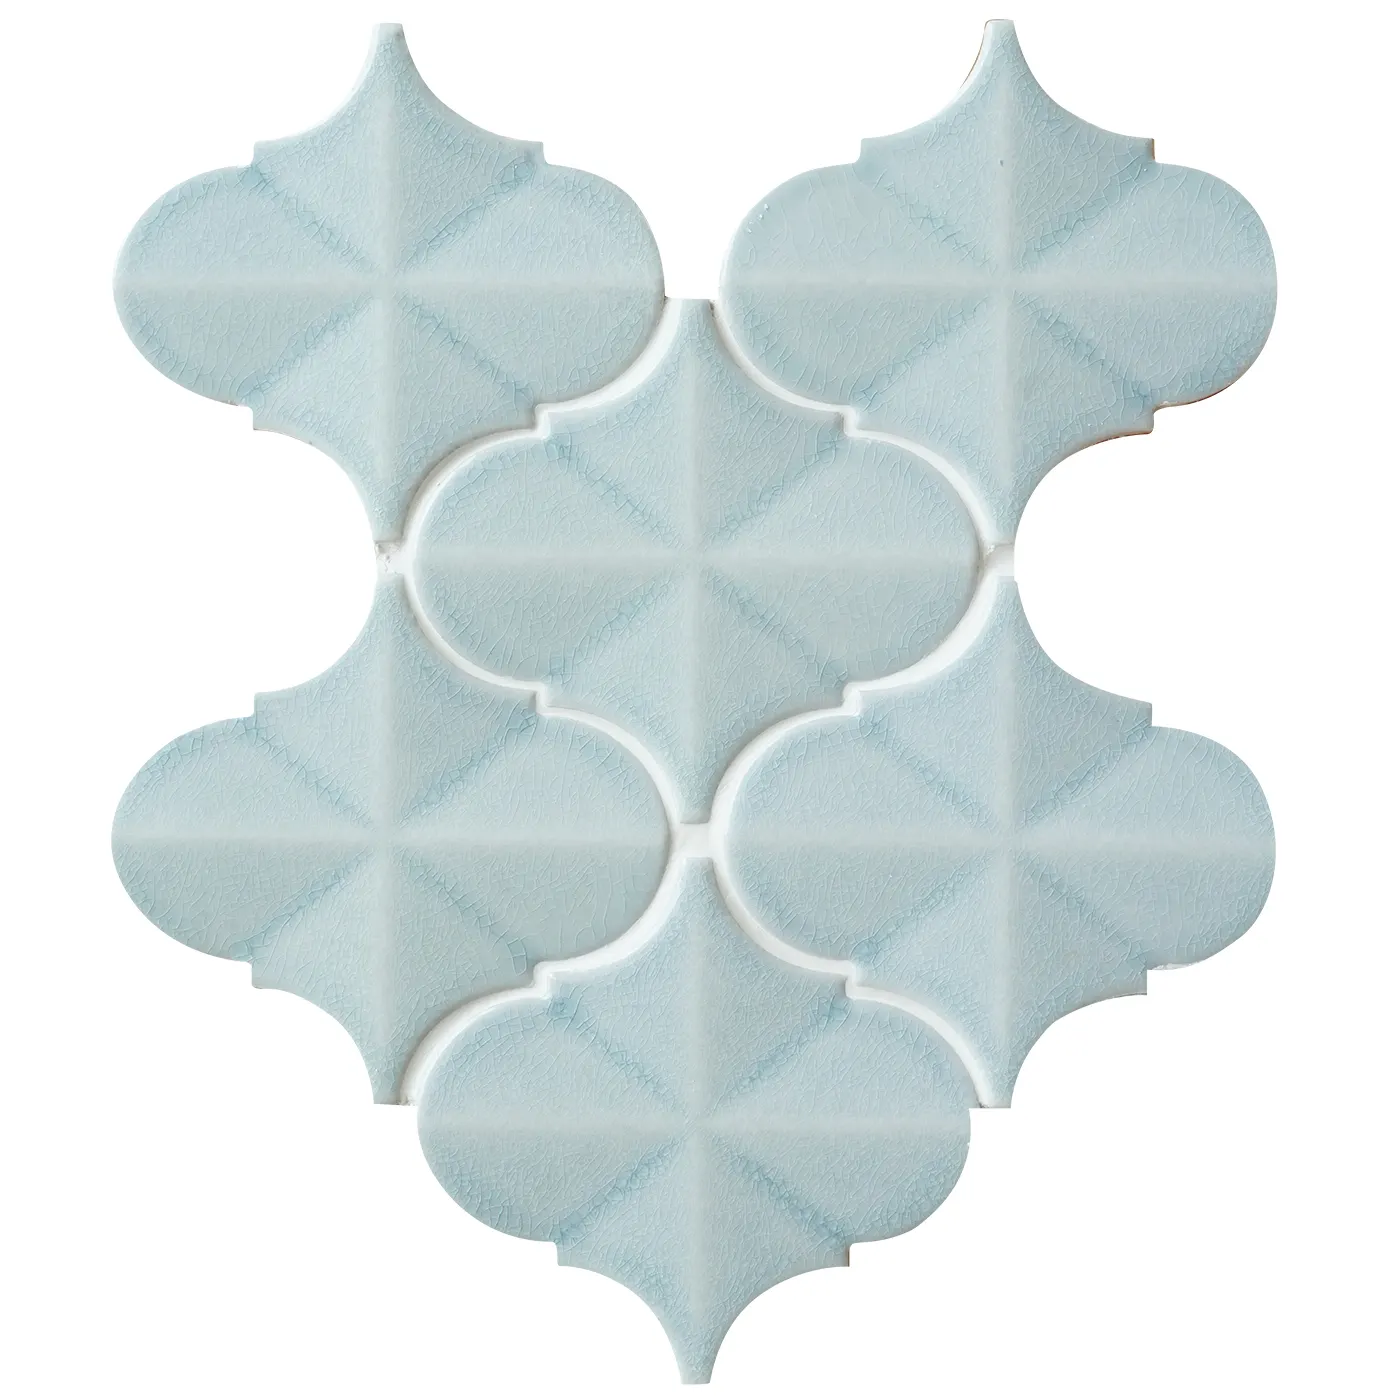 Modern ucuz fiyat açık mavi seramik arabesk mozaik duvar karosu buz kırık sırlı 3d fener Backsplash seramik mozaik karo